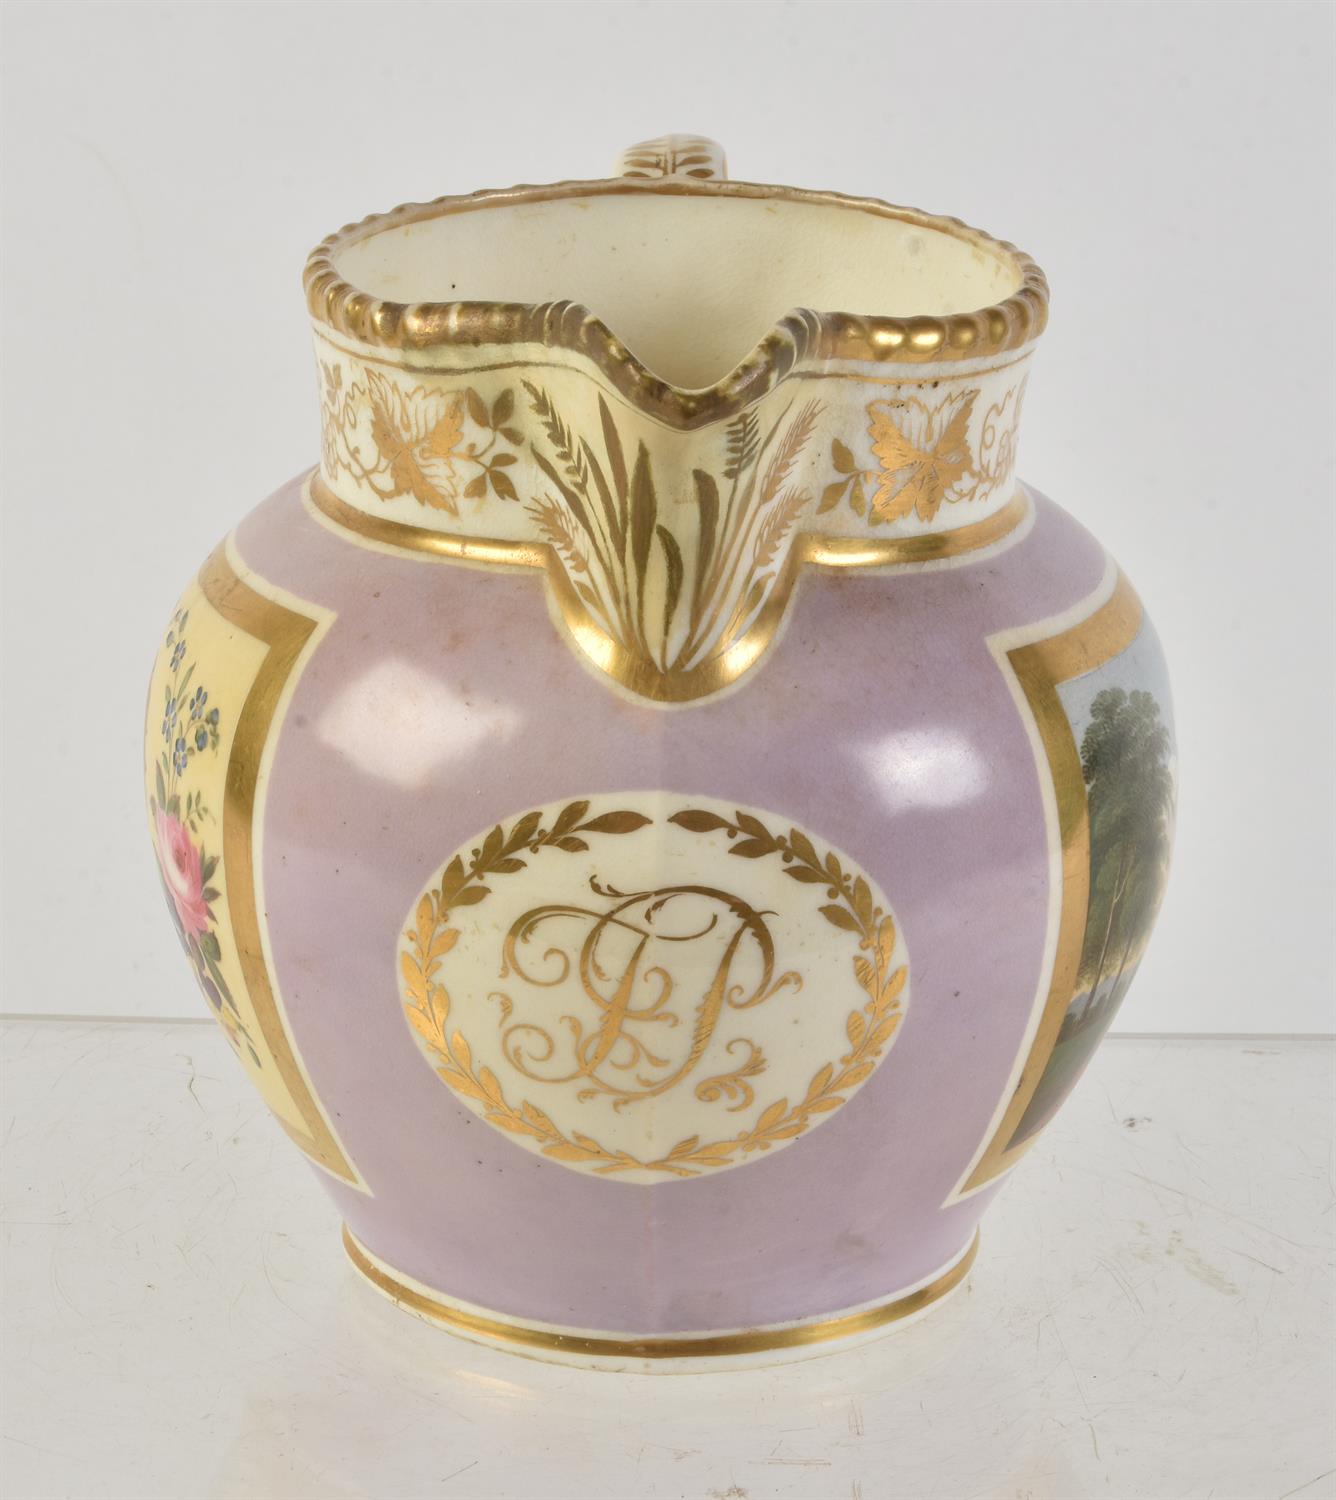 A Grainger's Worcester commemorative jug - Image 2 of 4